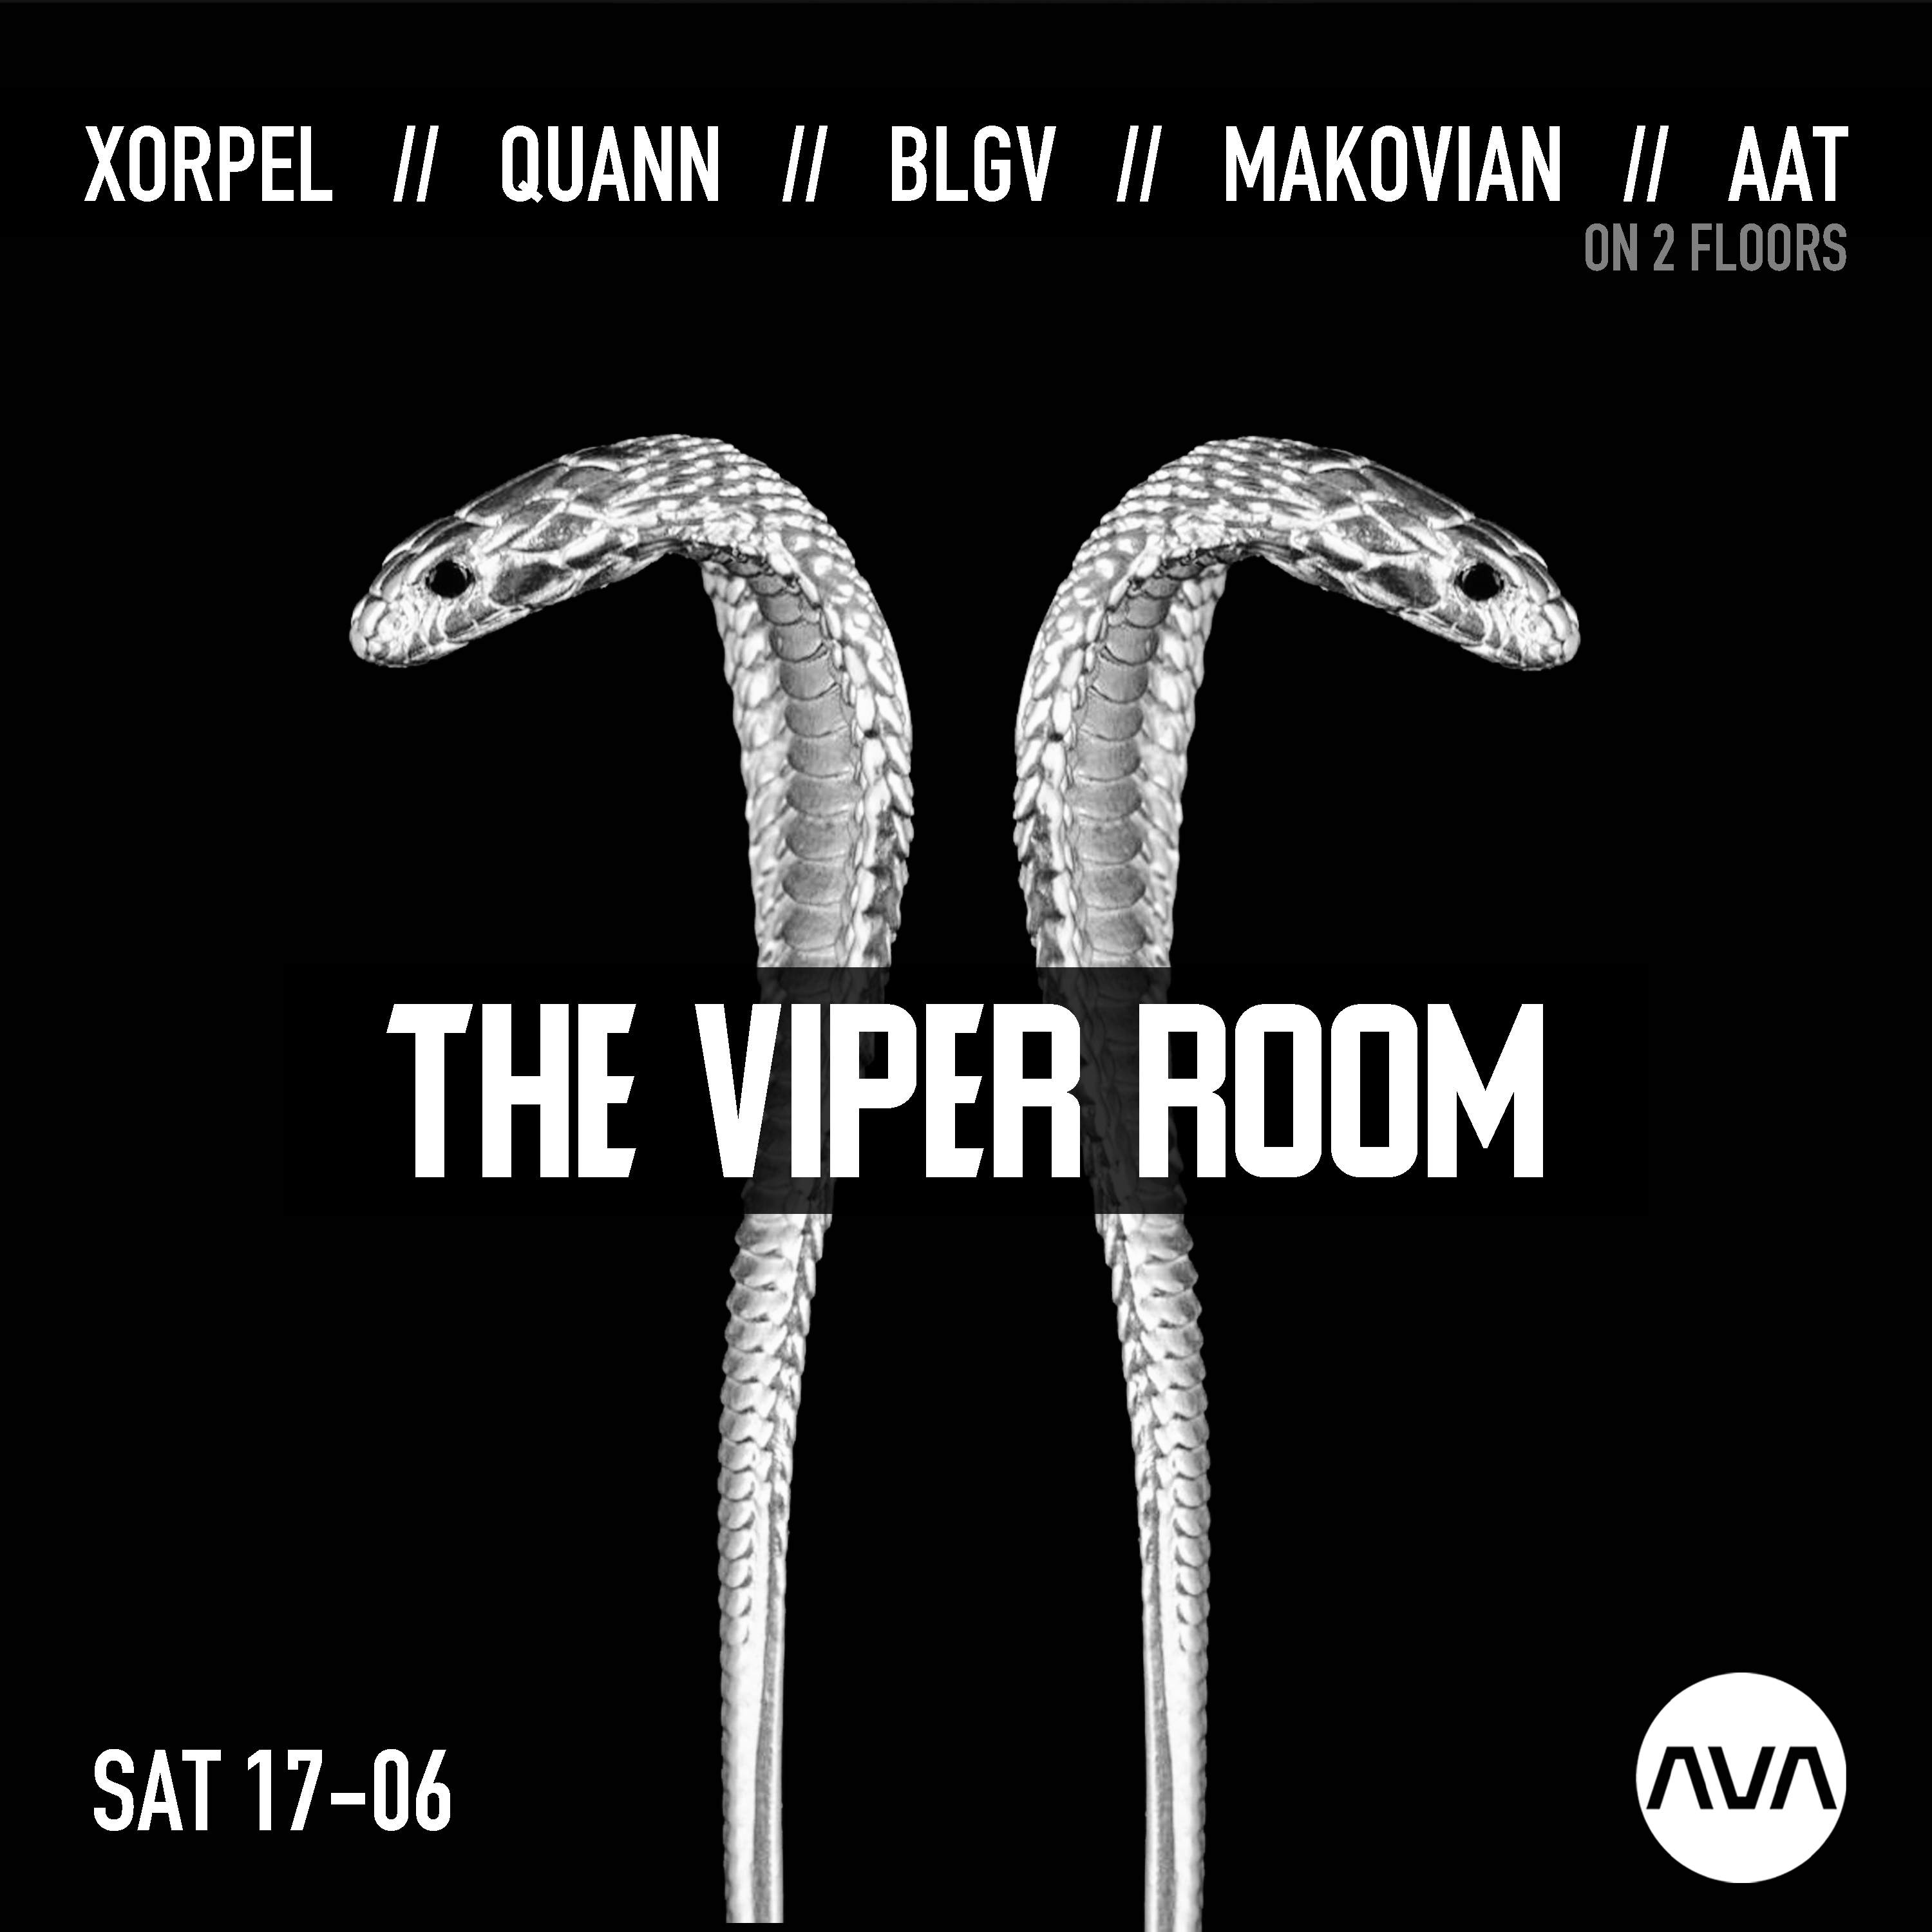 THE VIPER ROOM presents Xorpel, QUANN, BLGV, Aat, Makovian - Página frontal